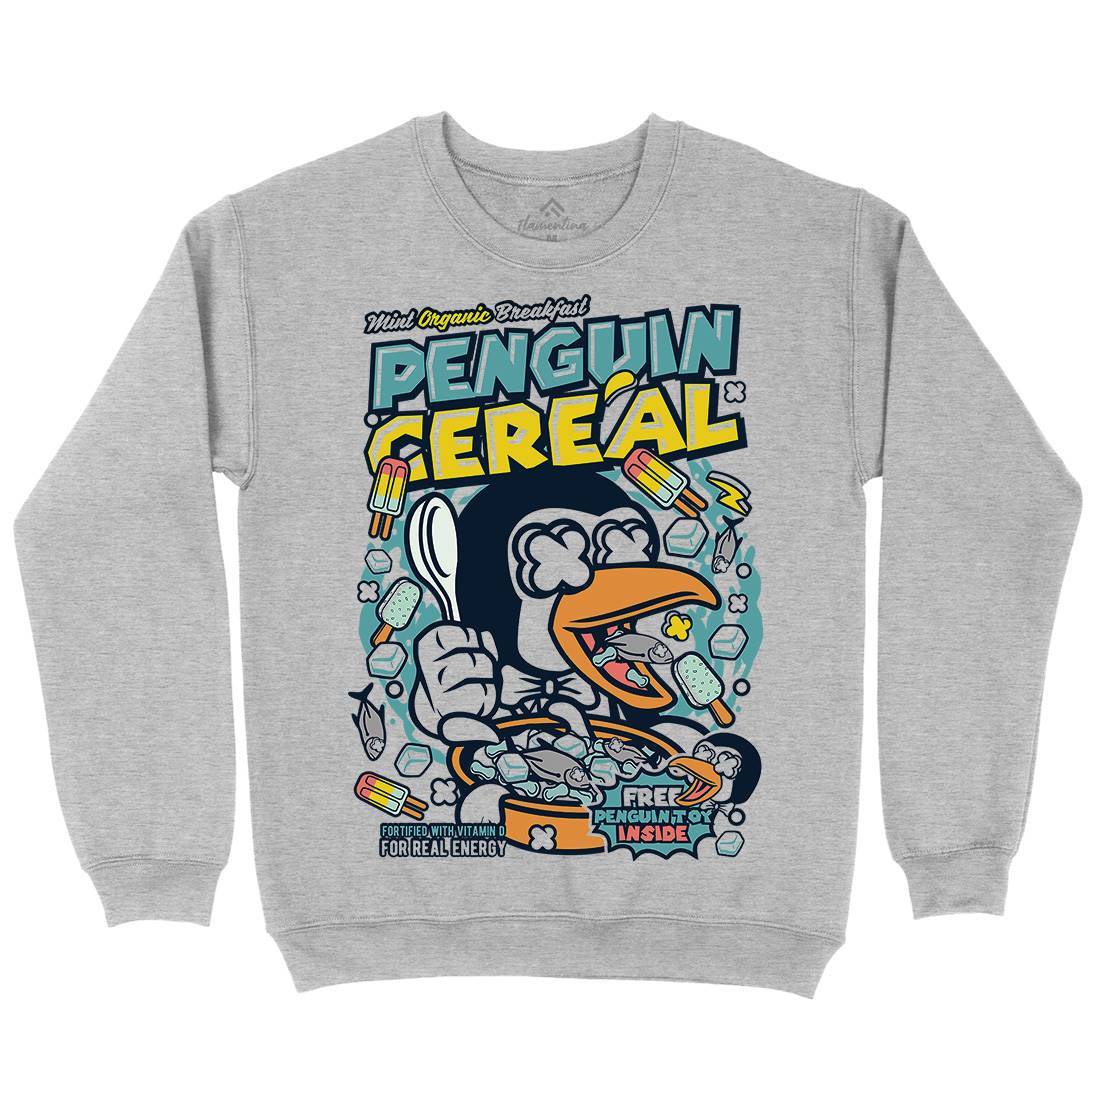 Penguin Cereal Box Mens Crew Neck Sweatshirt Food C602